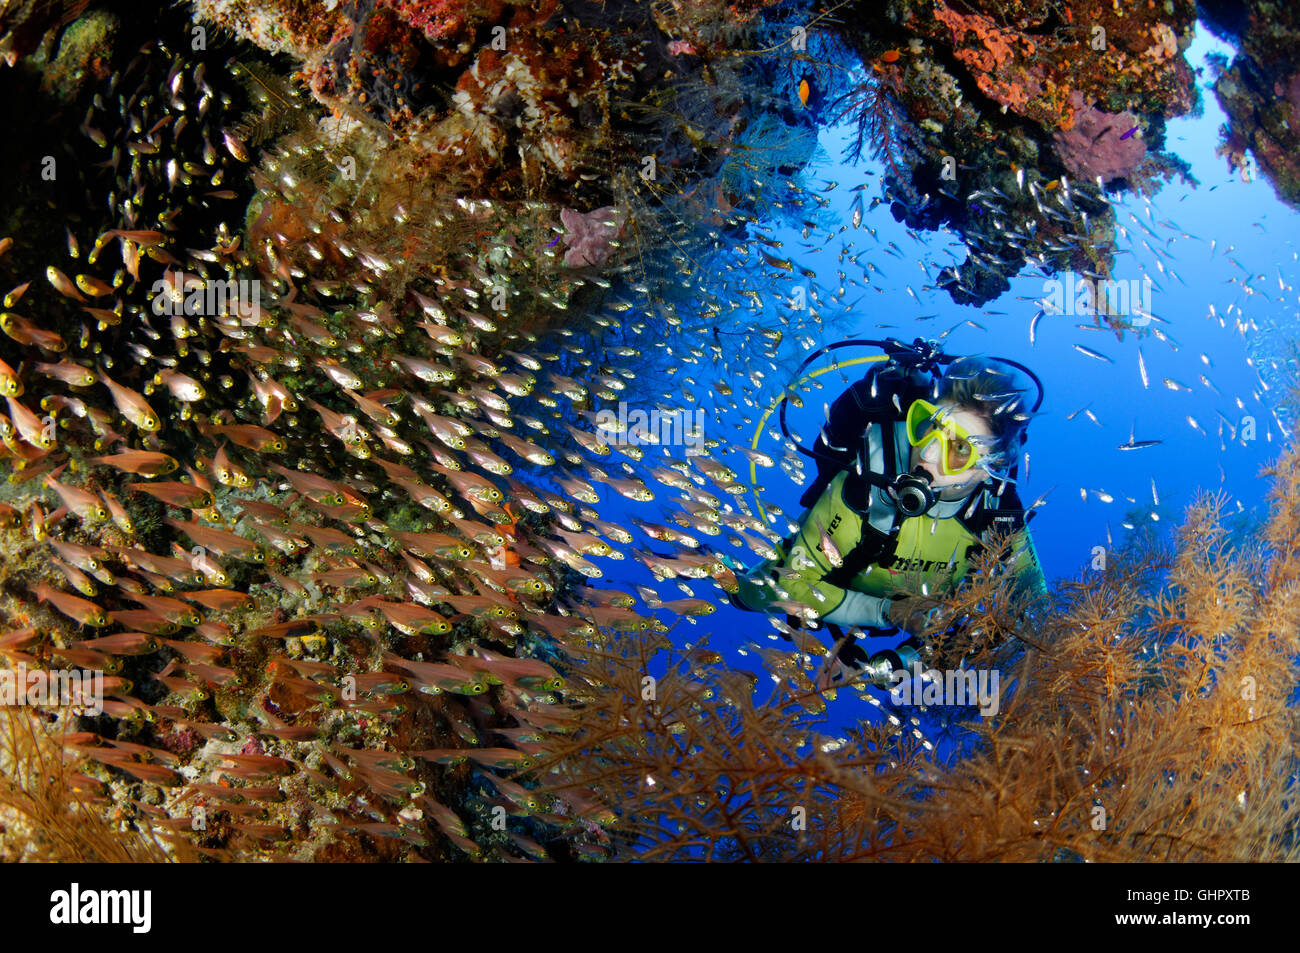 Ransonneti Parapriacanthus, banc de pigmy Sweeper et scuba diver, Abou Fandera, Red Sea, Egypt, Africa Banque D'Images